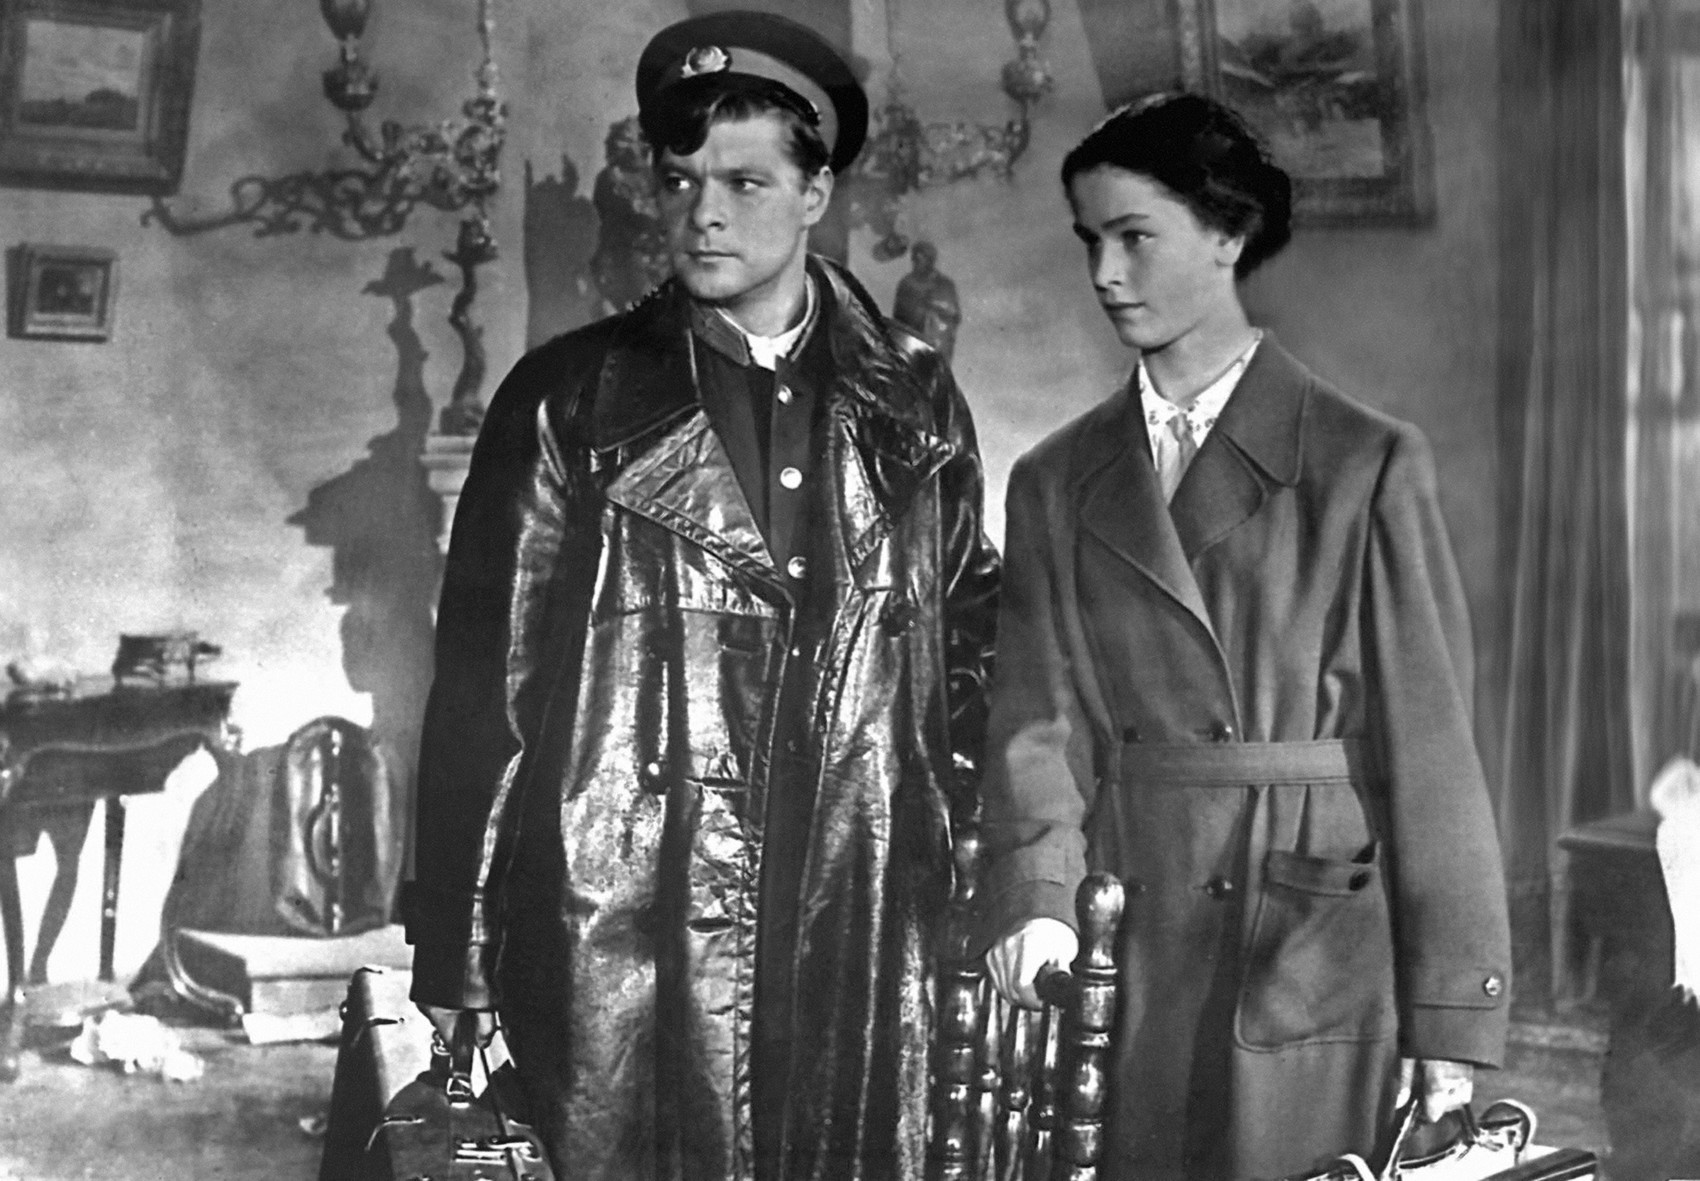 Cena do filme “Dois capitães” (1955).